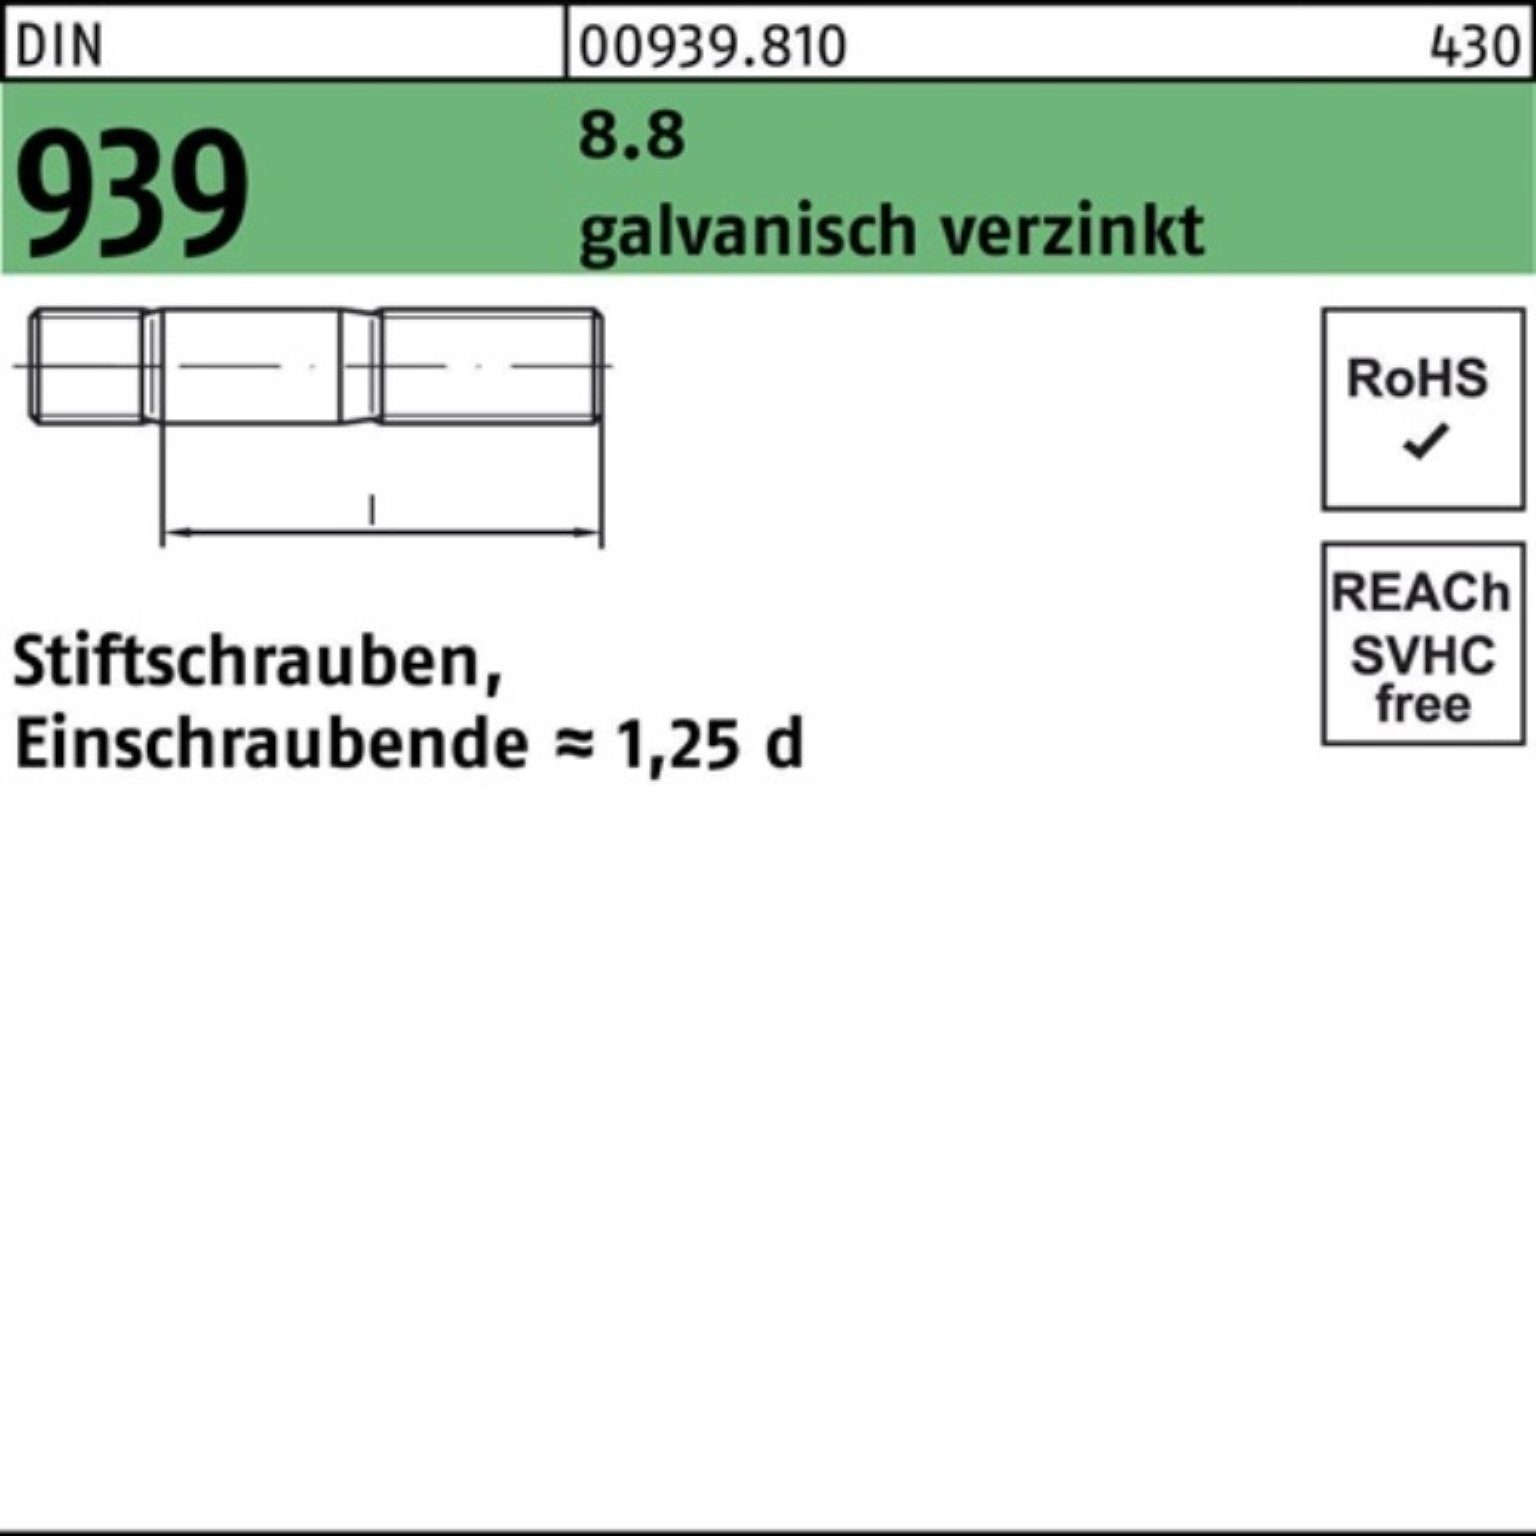 Reyher Stiftschraube 100er Pack Stiftschraube M10x45 939 galv.verz. DIN Einschraubende= 8.8